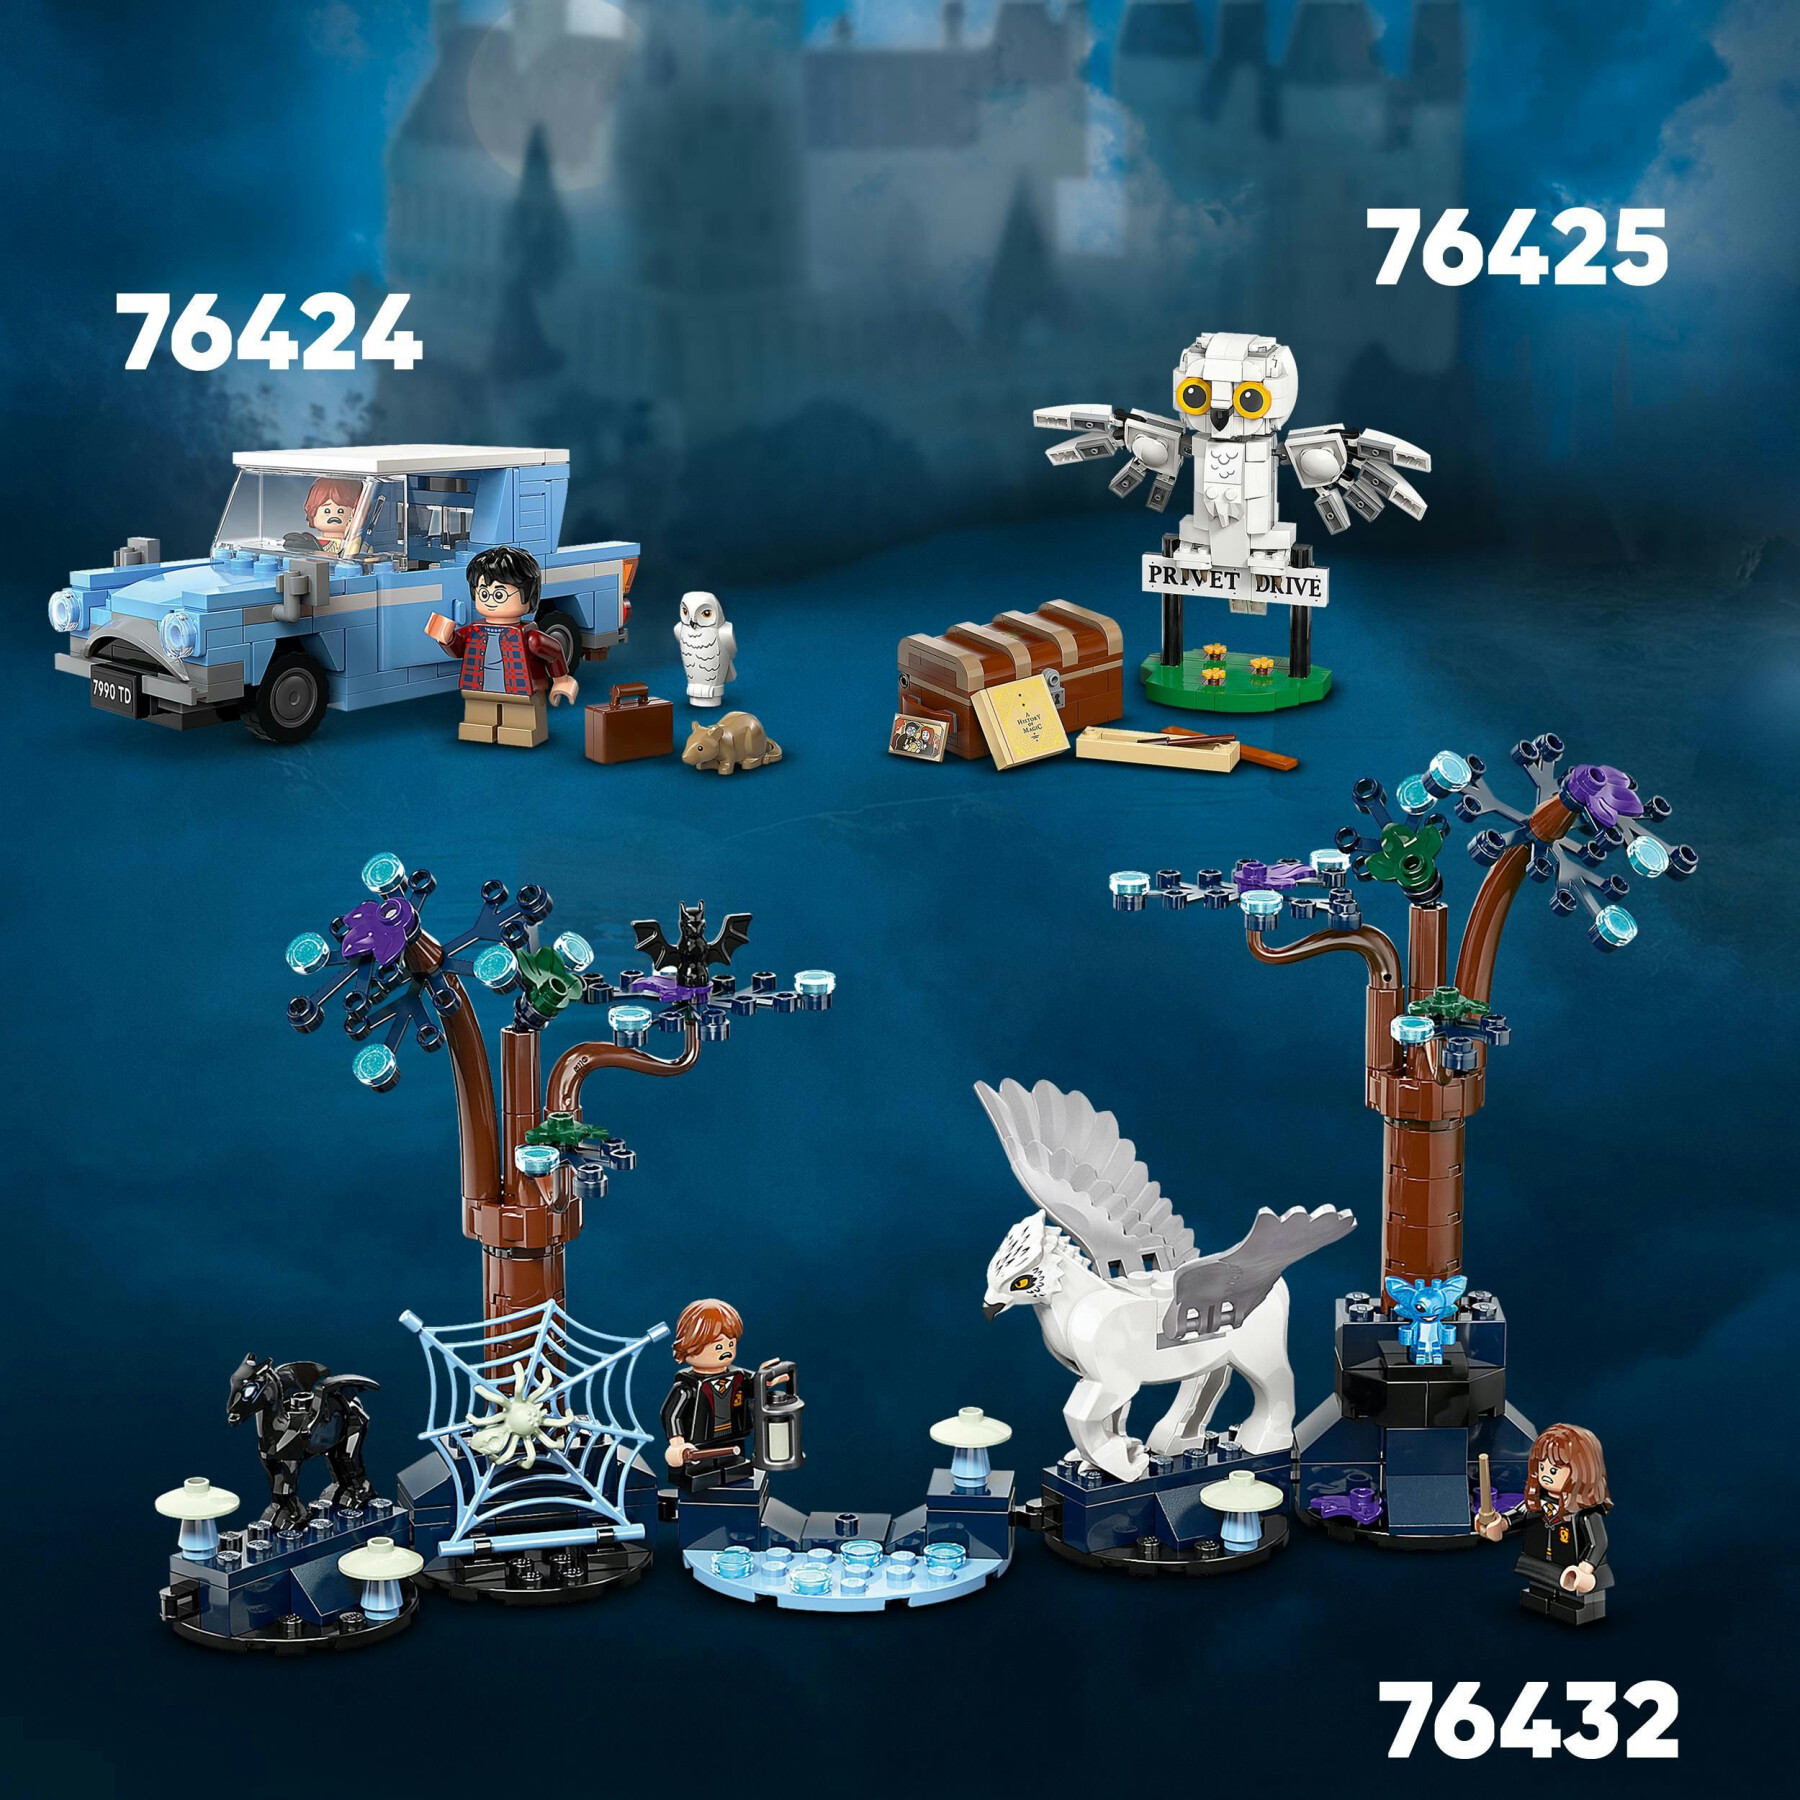 Lego harry potter 76425 edvige al numero 4 di privet drive, gioco per bambini 7+, modellino da costruire di civetta delle nevi - Harry Potter, LEGO® Harry Potter™